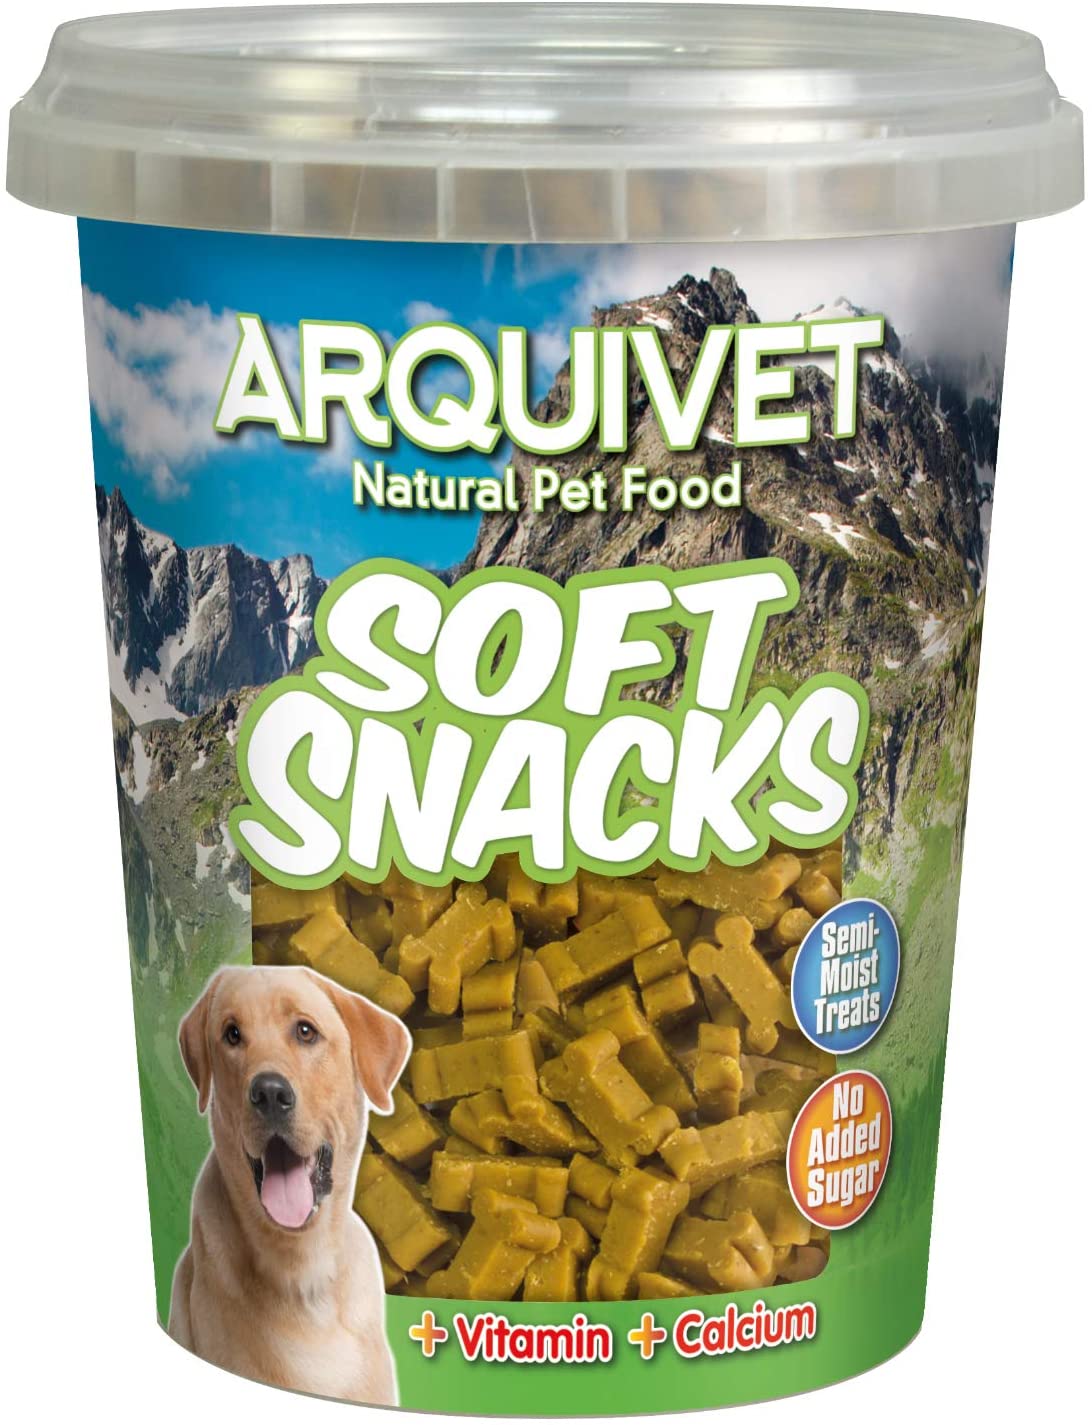  Arquivet Soft Snacks huesitos Pollo 300 grs - 340 gr 